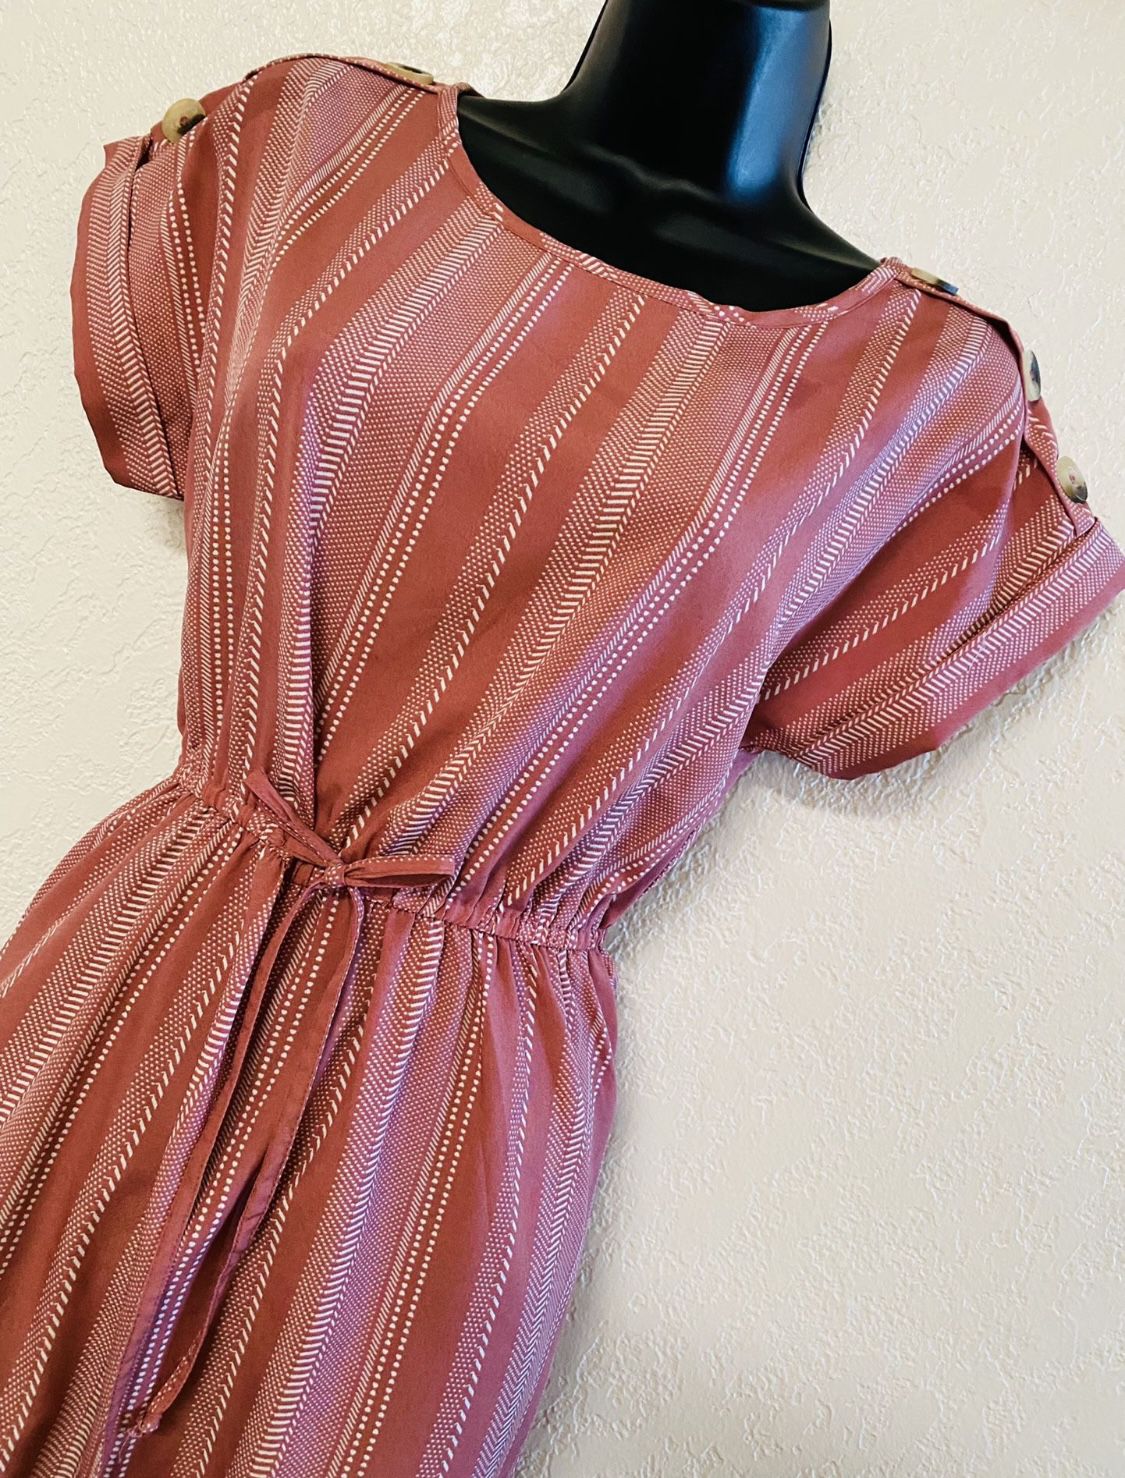 BLUSH, Pink & White Striped Dress, Size S